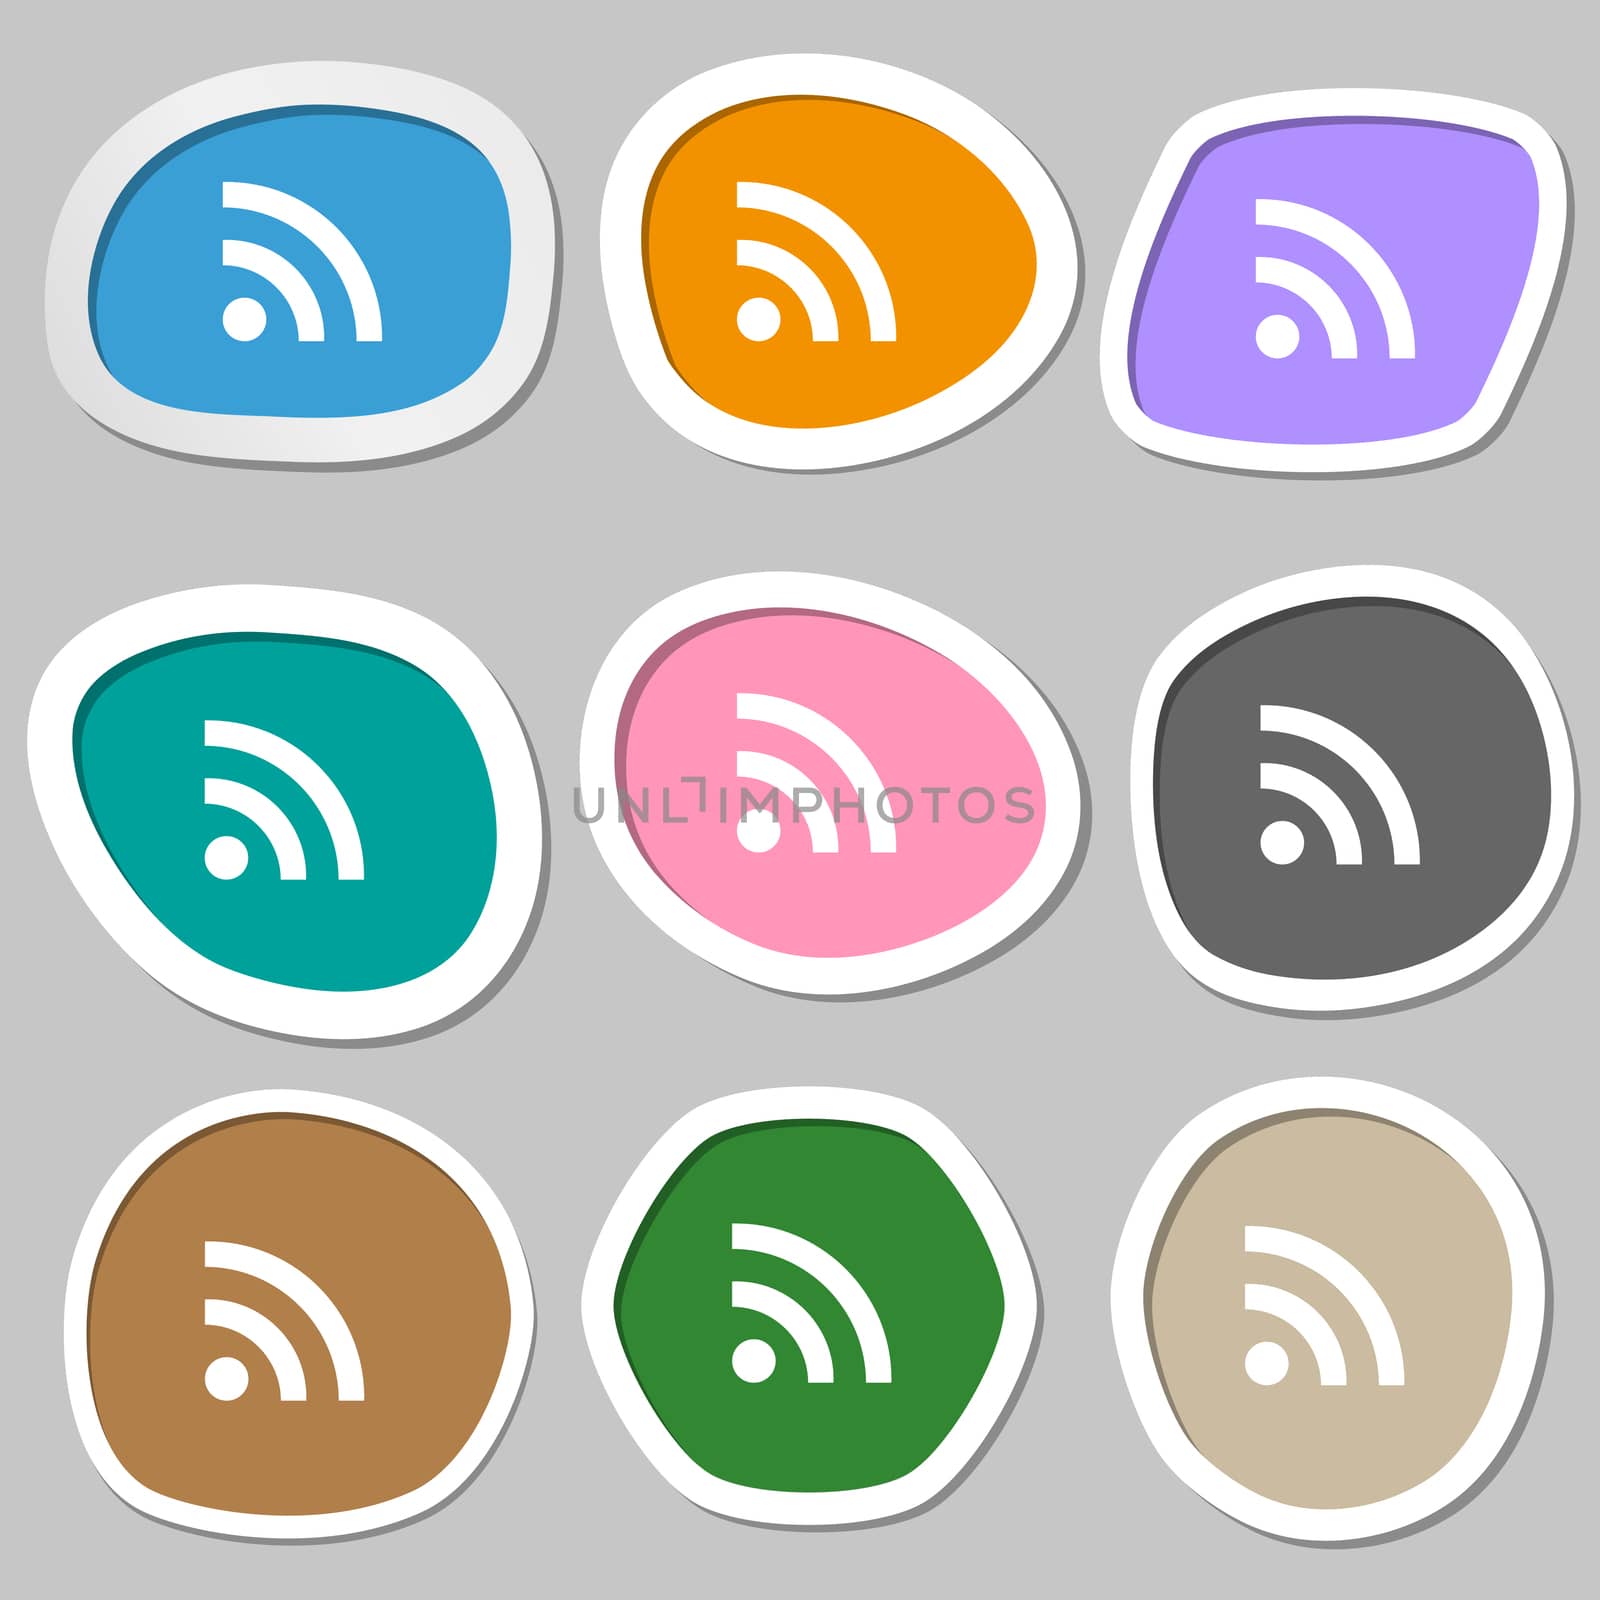 Wifi, Wi-fi, Wireless Network icon symbols. Multicolored paper stickers. illustration